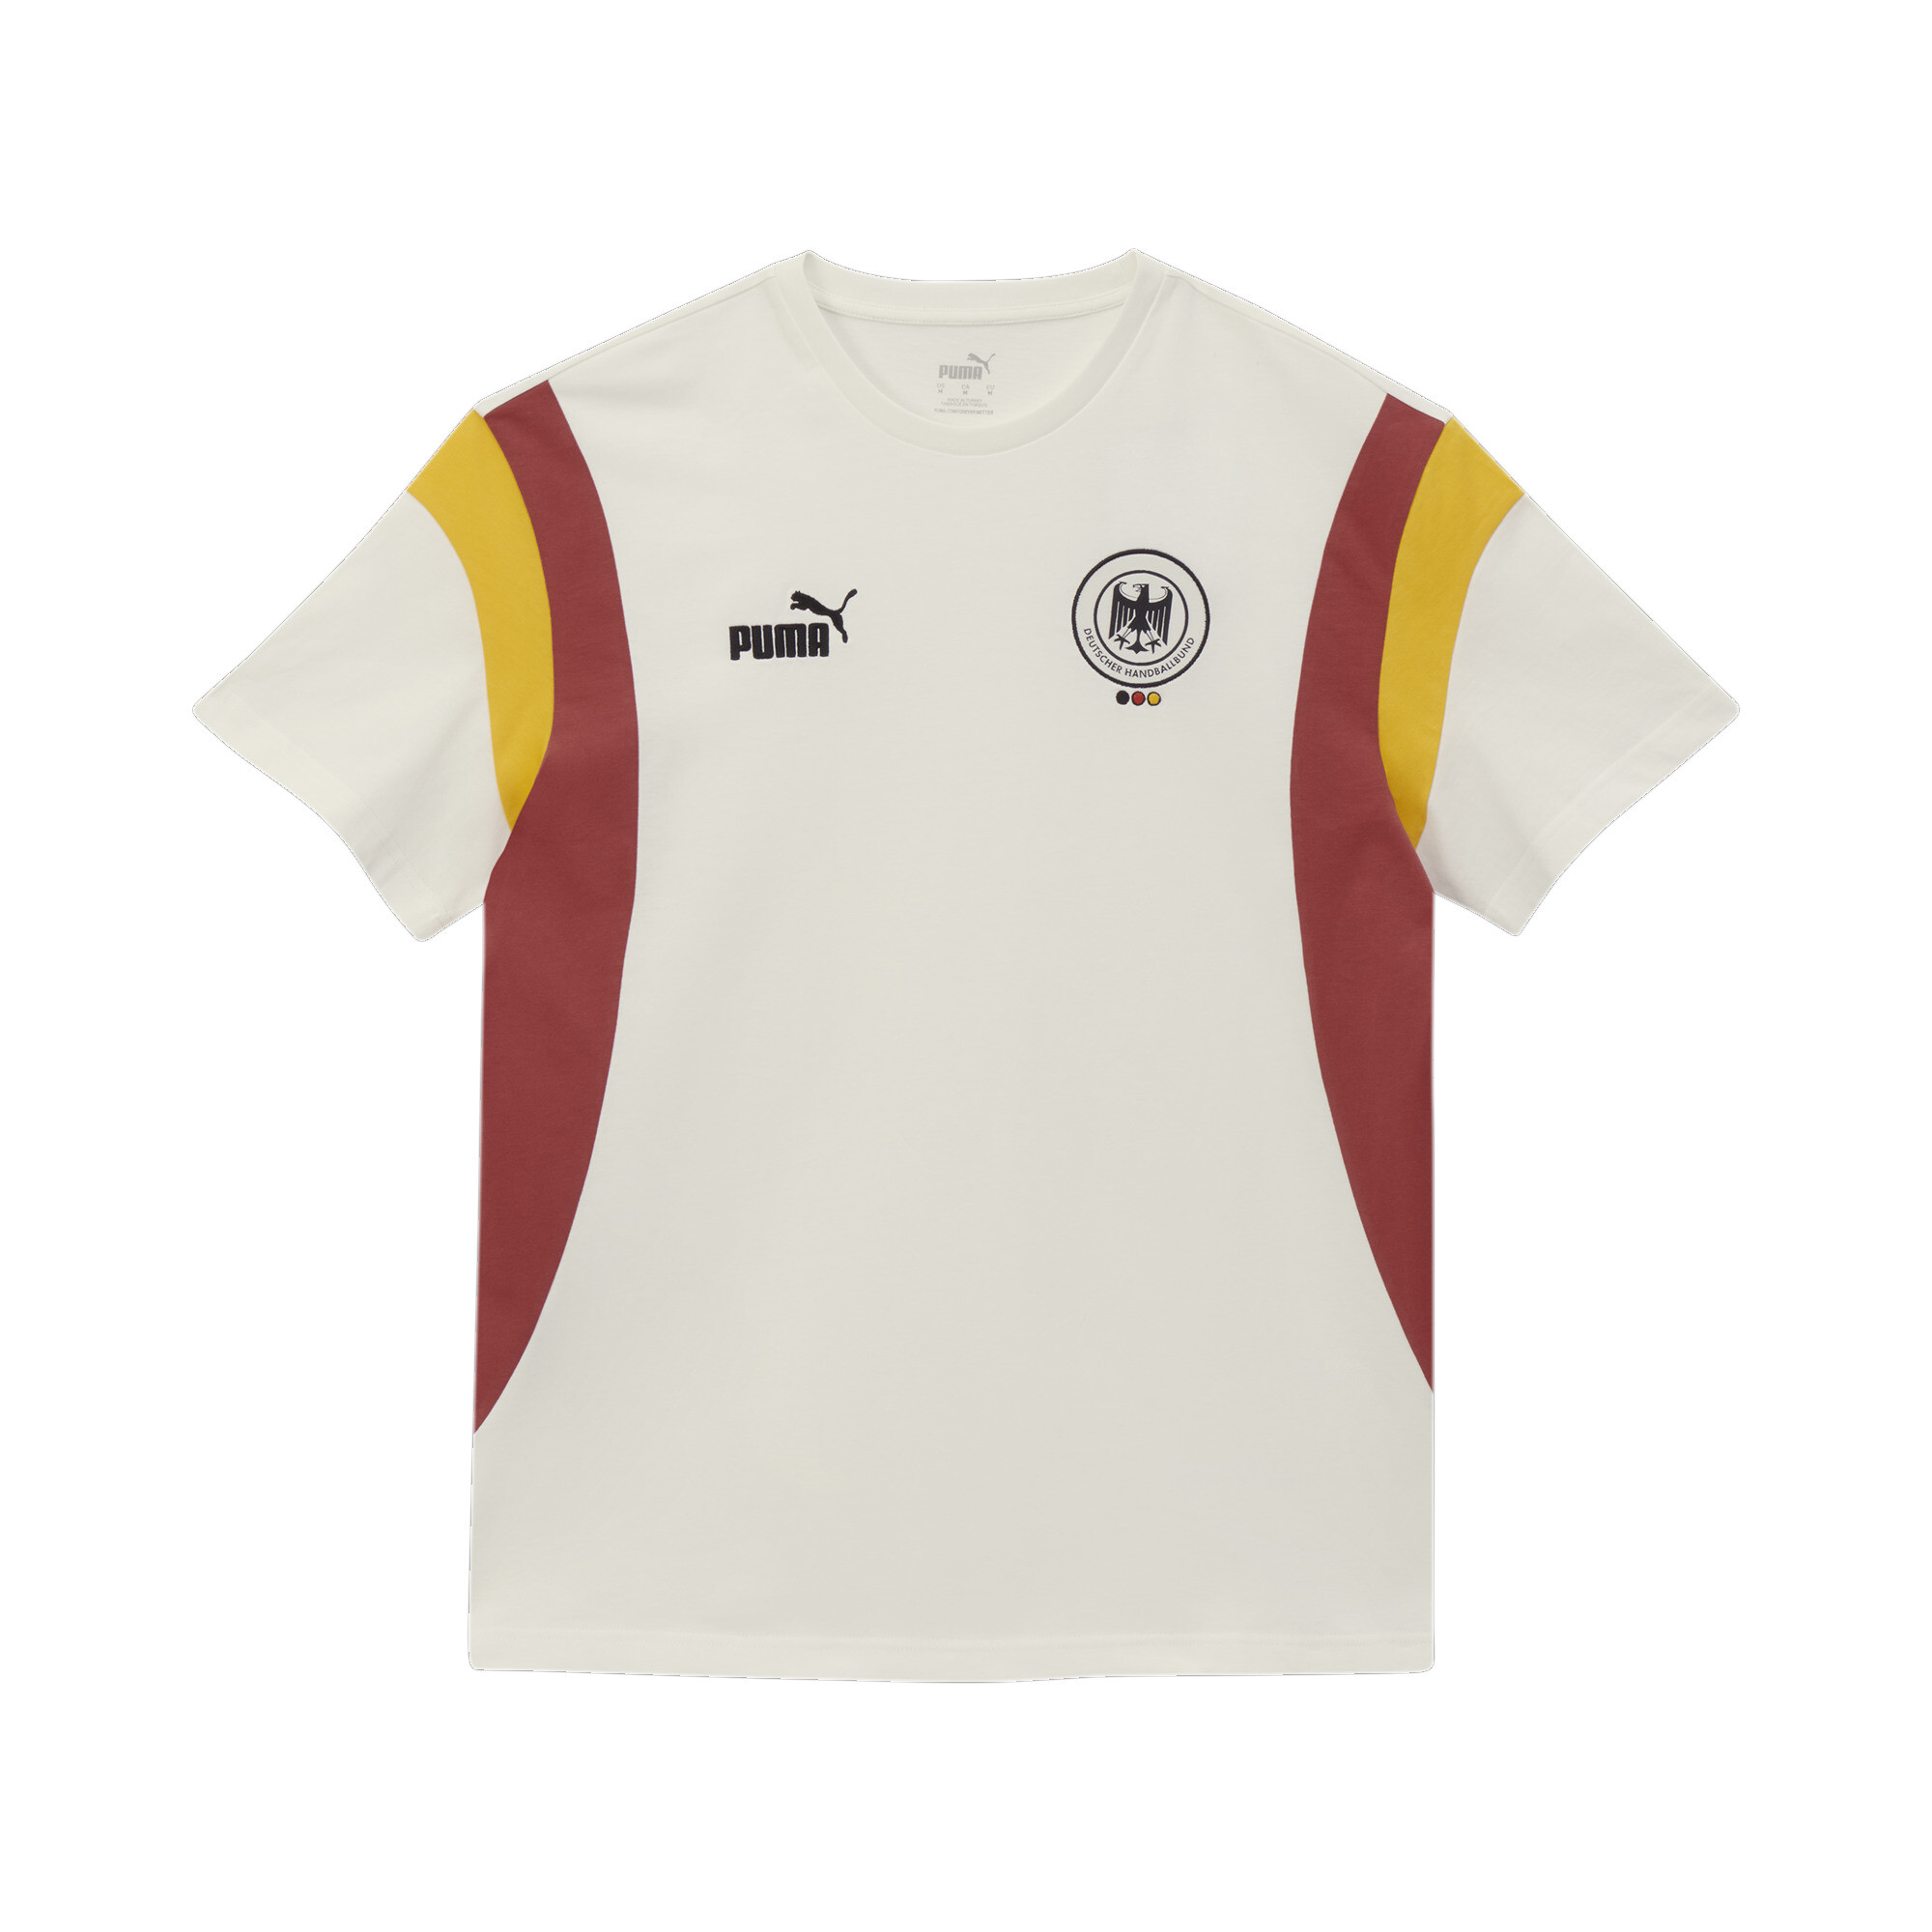 Men's Puma Deutscher Handball Bund Archive's T-Shirt, White, Size XXL, German